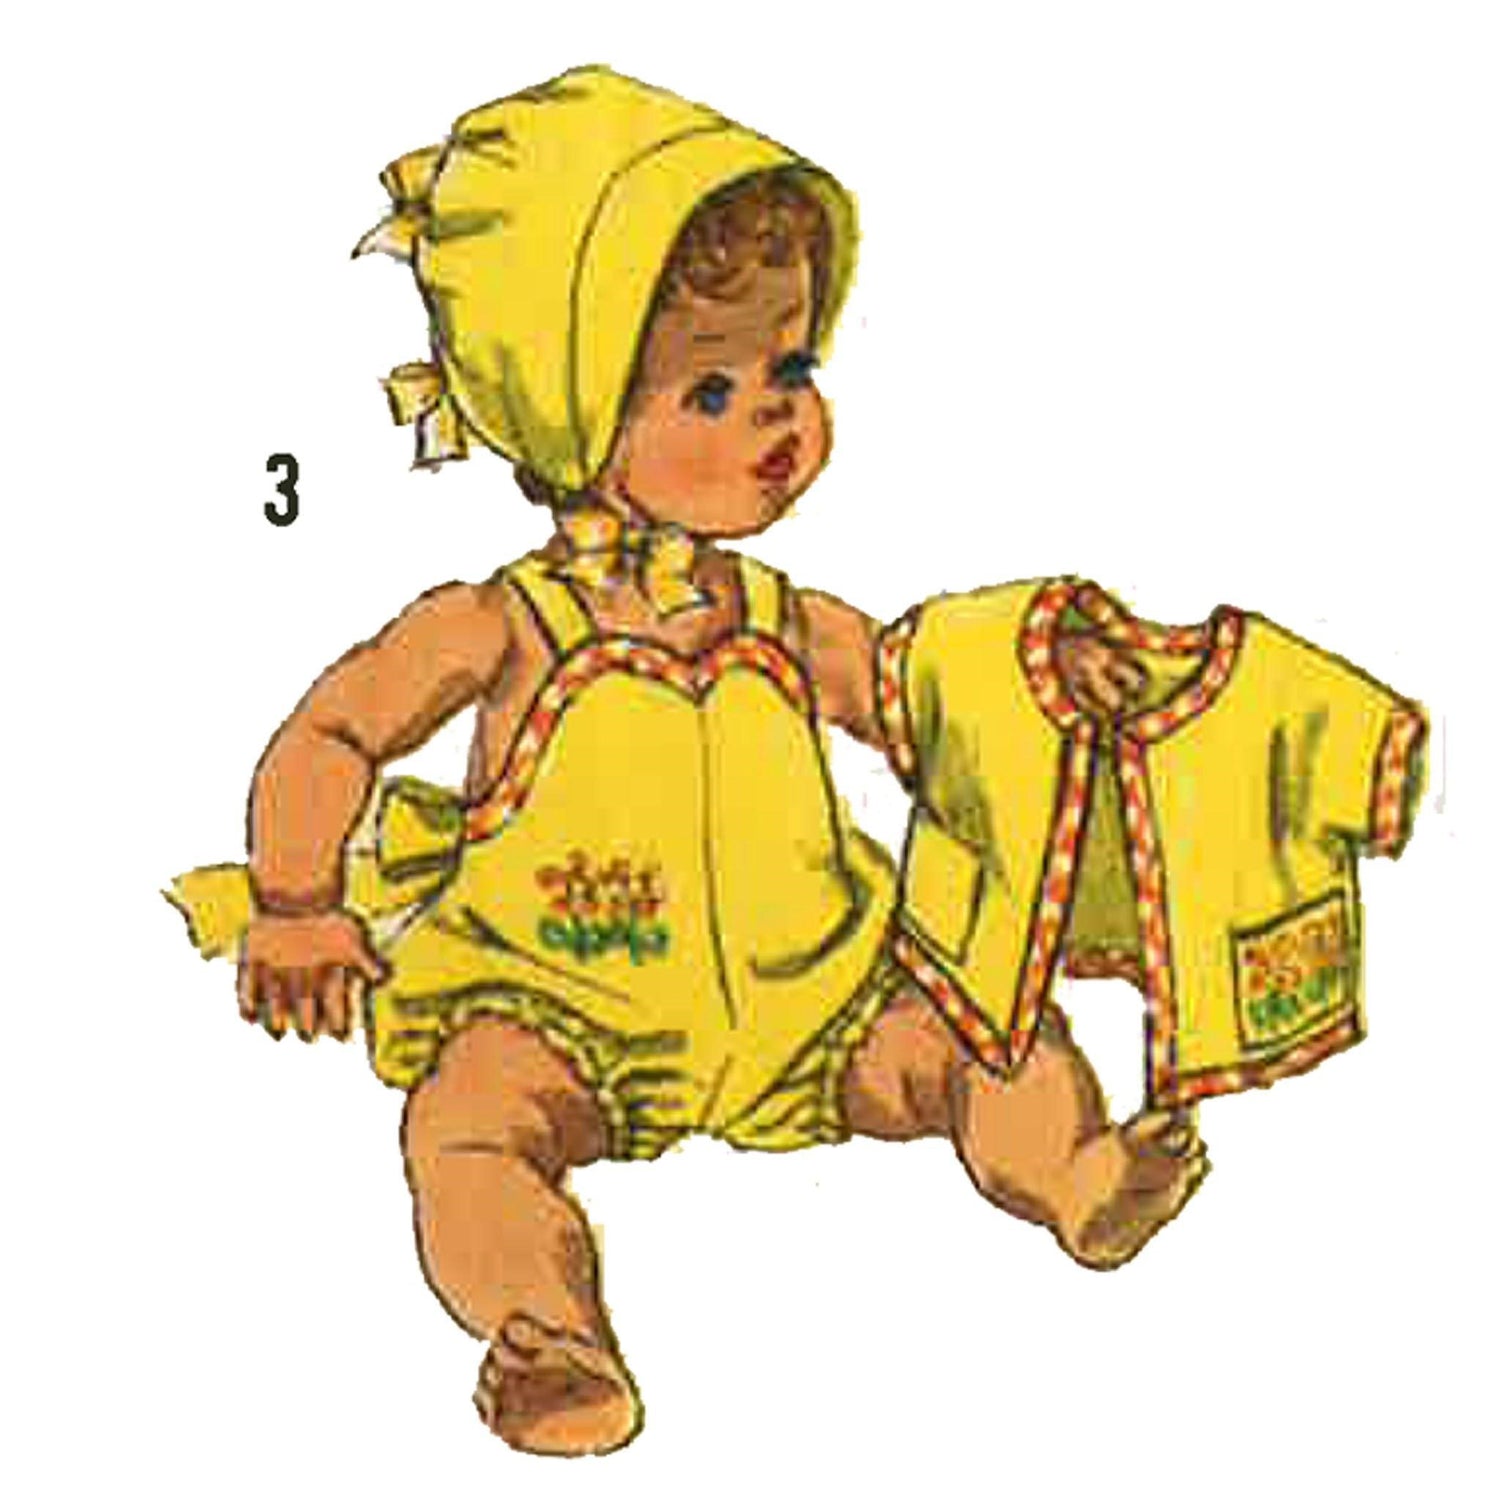 Toddler wearing dress